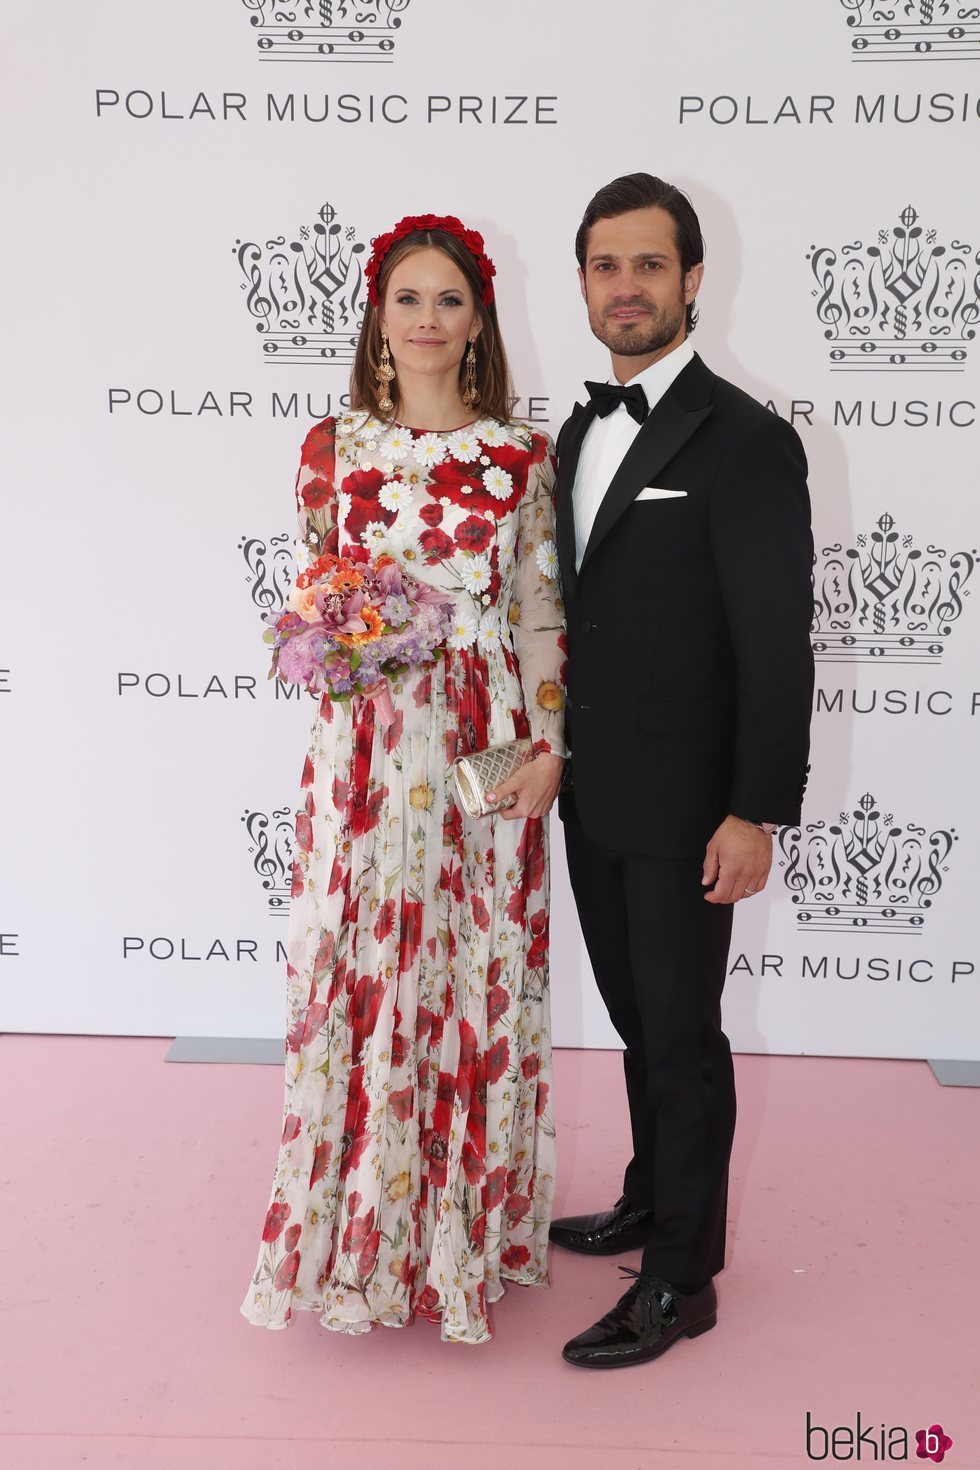 Carlos Felipe de Suecia y Sofia Hellqvist en los Polar Music 2019